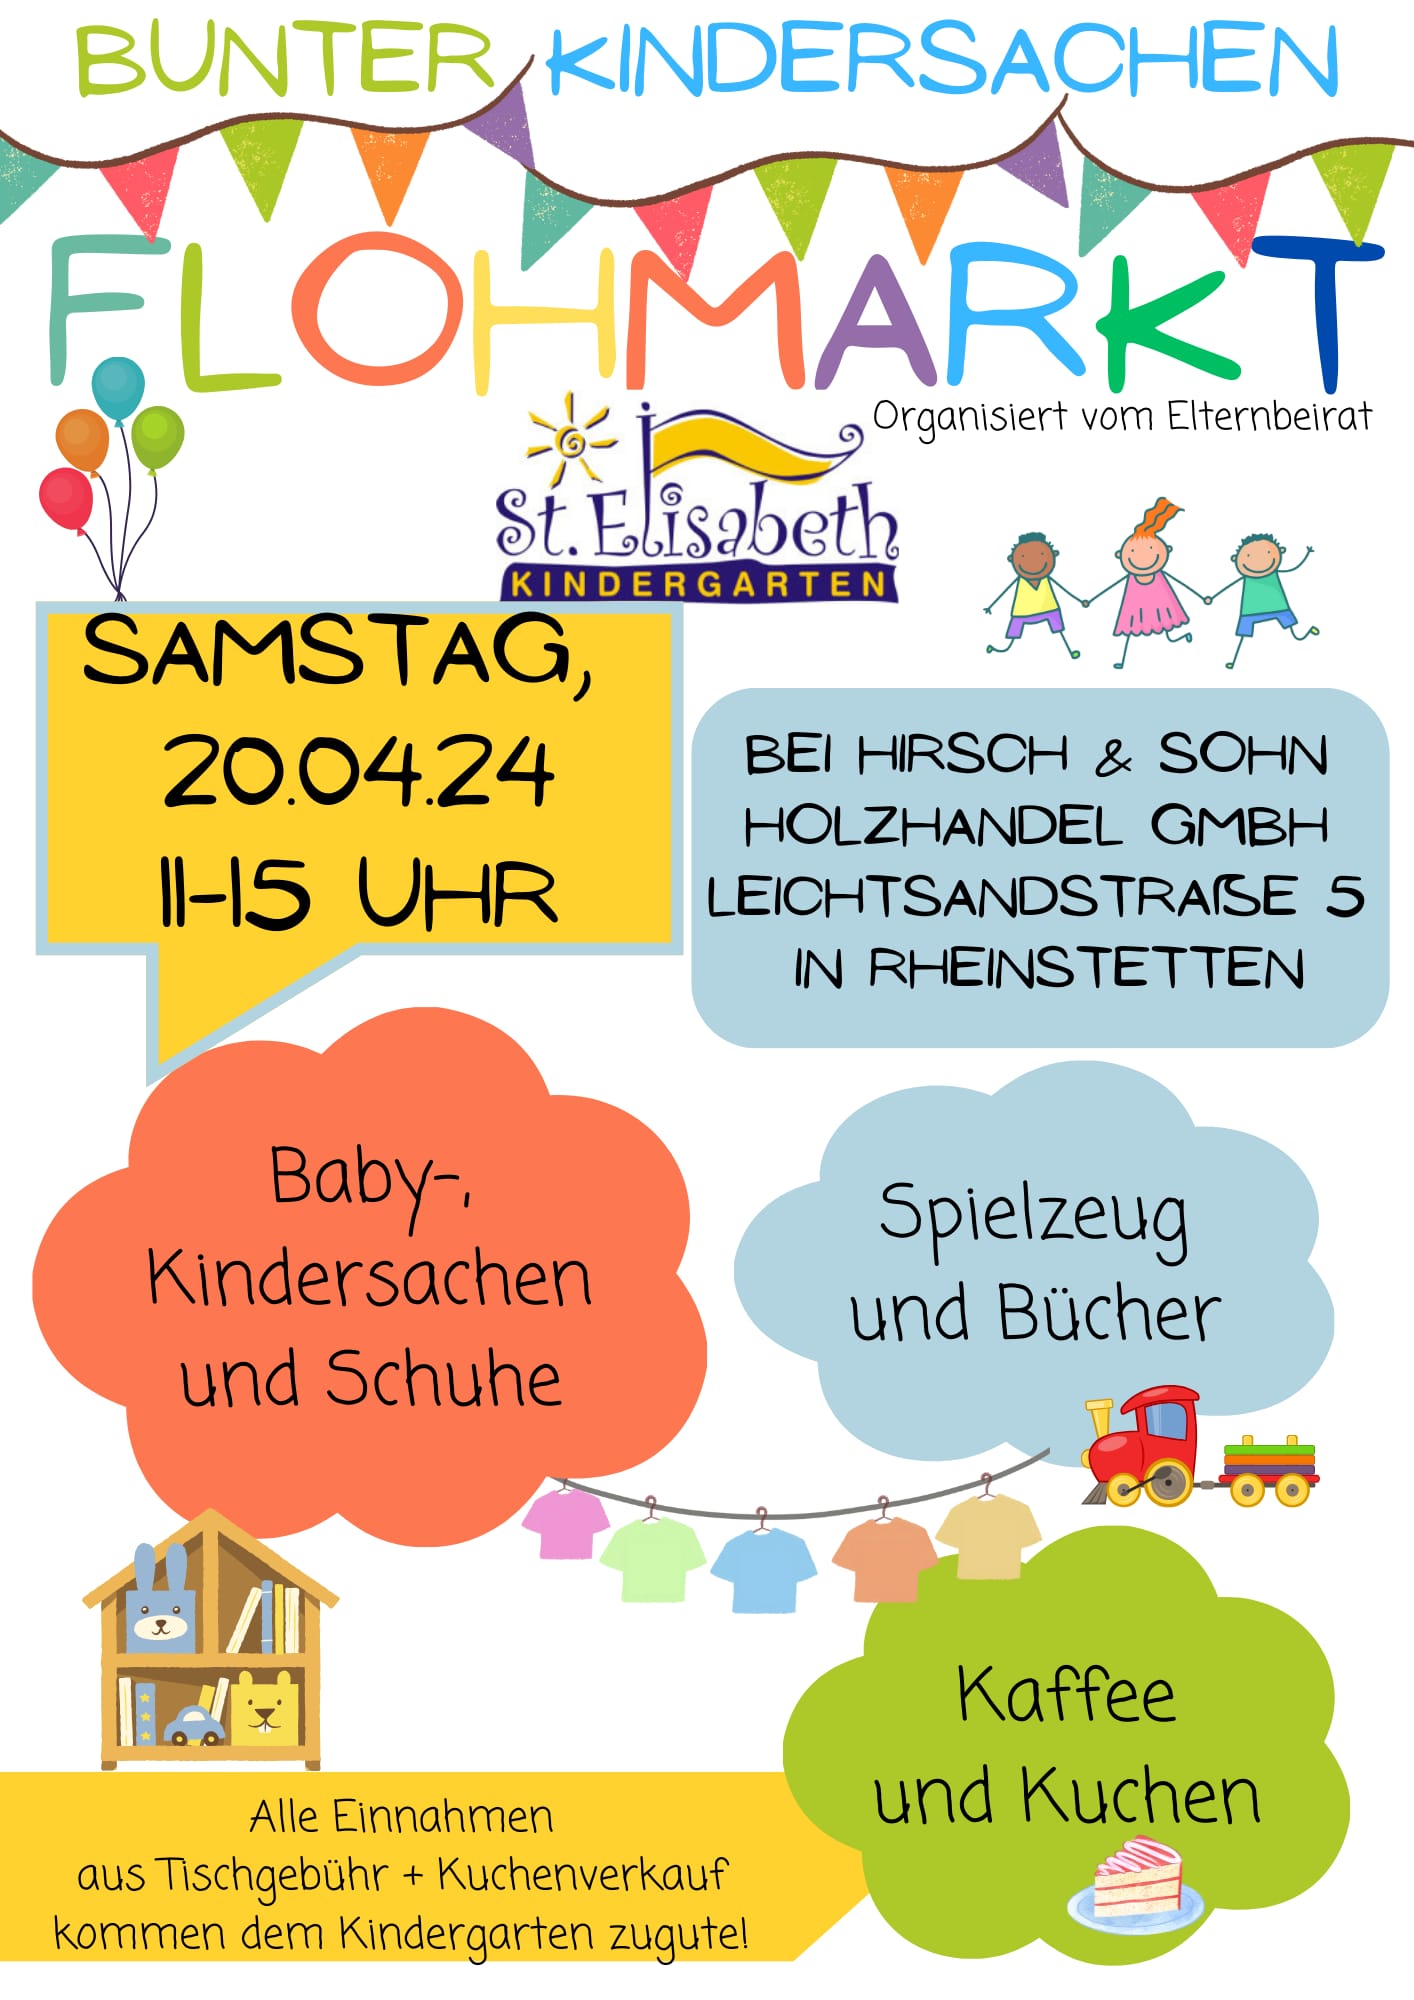 Bunter Kindersachen Flohmarkt | Rheinstetten